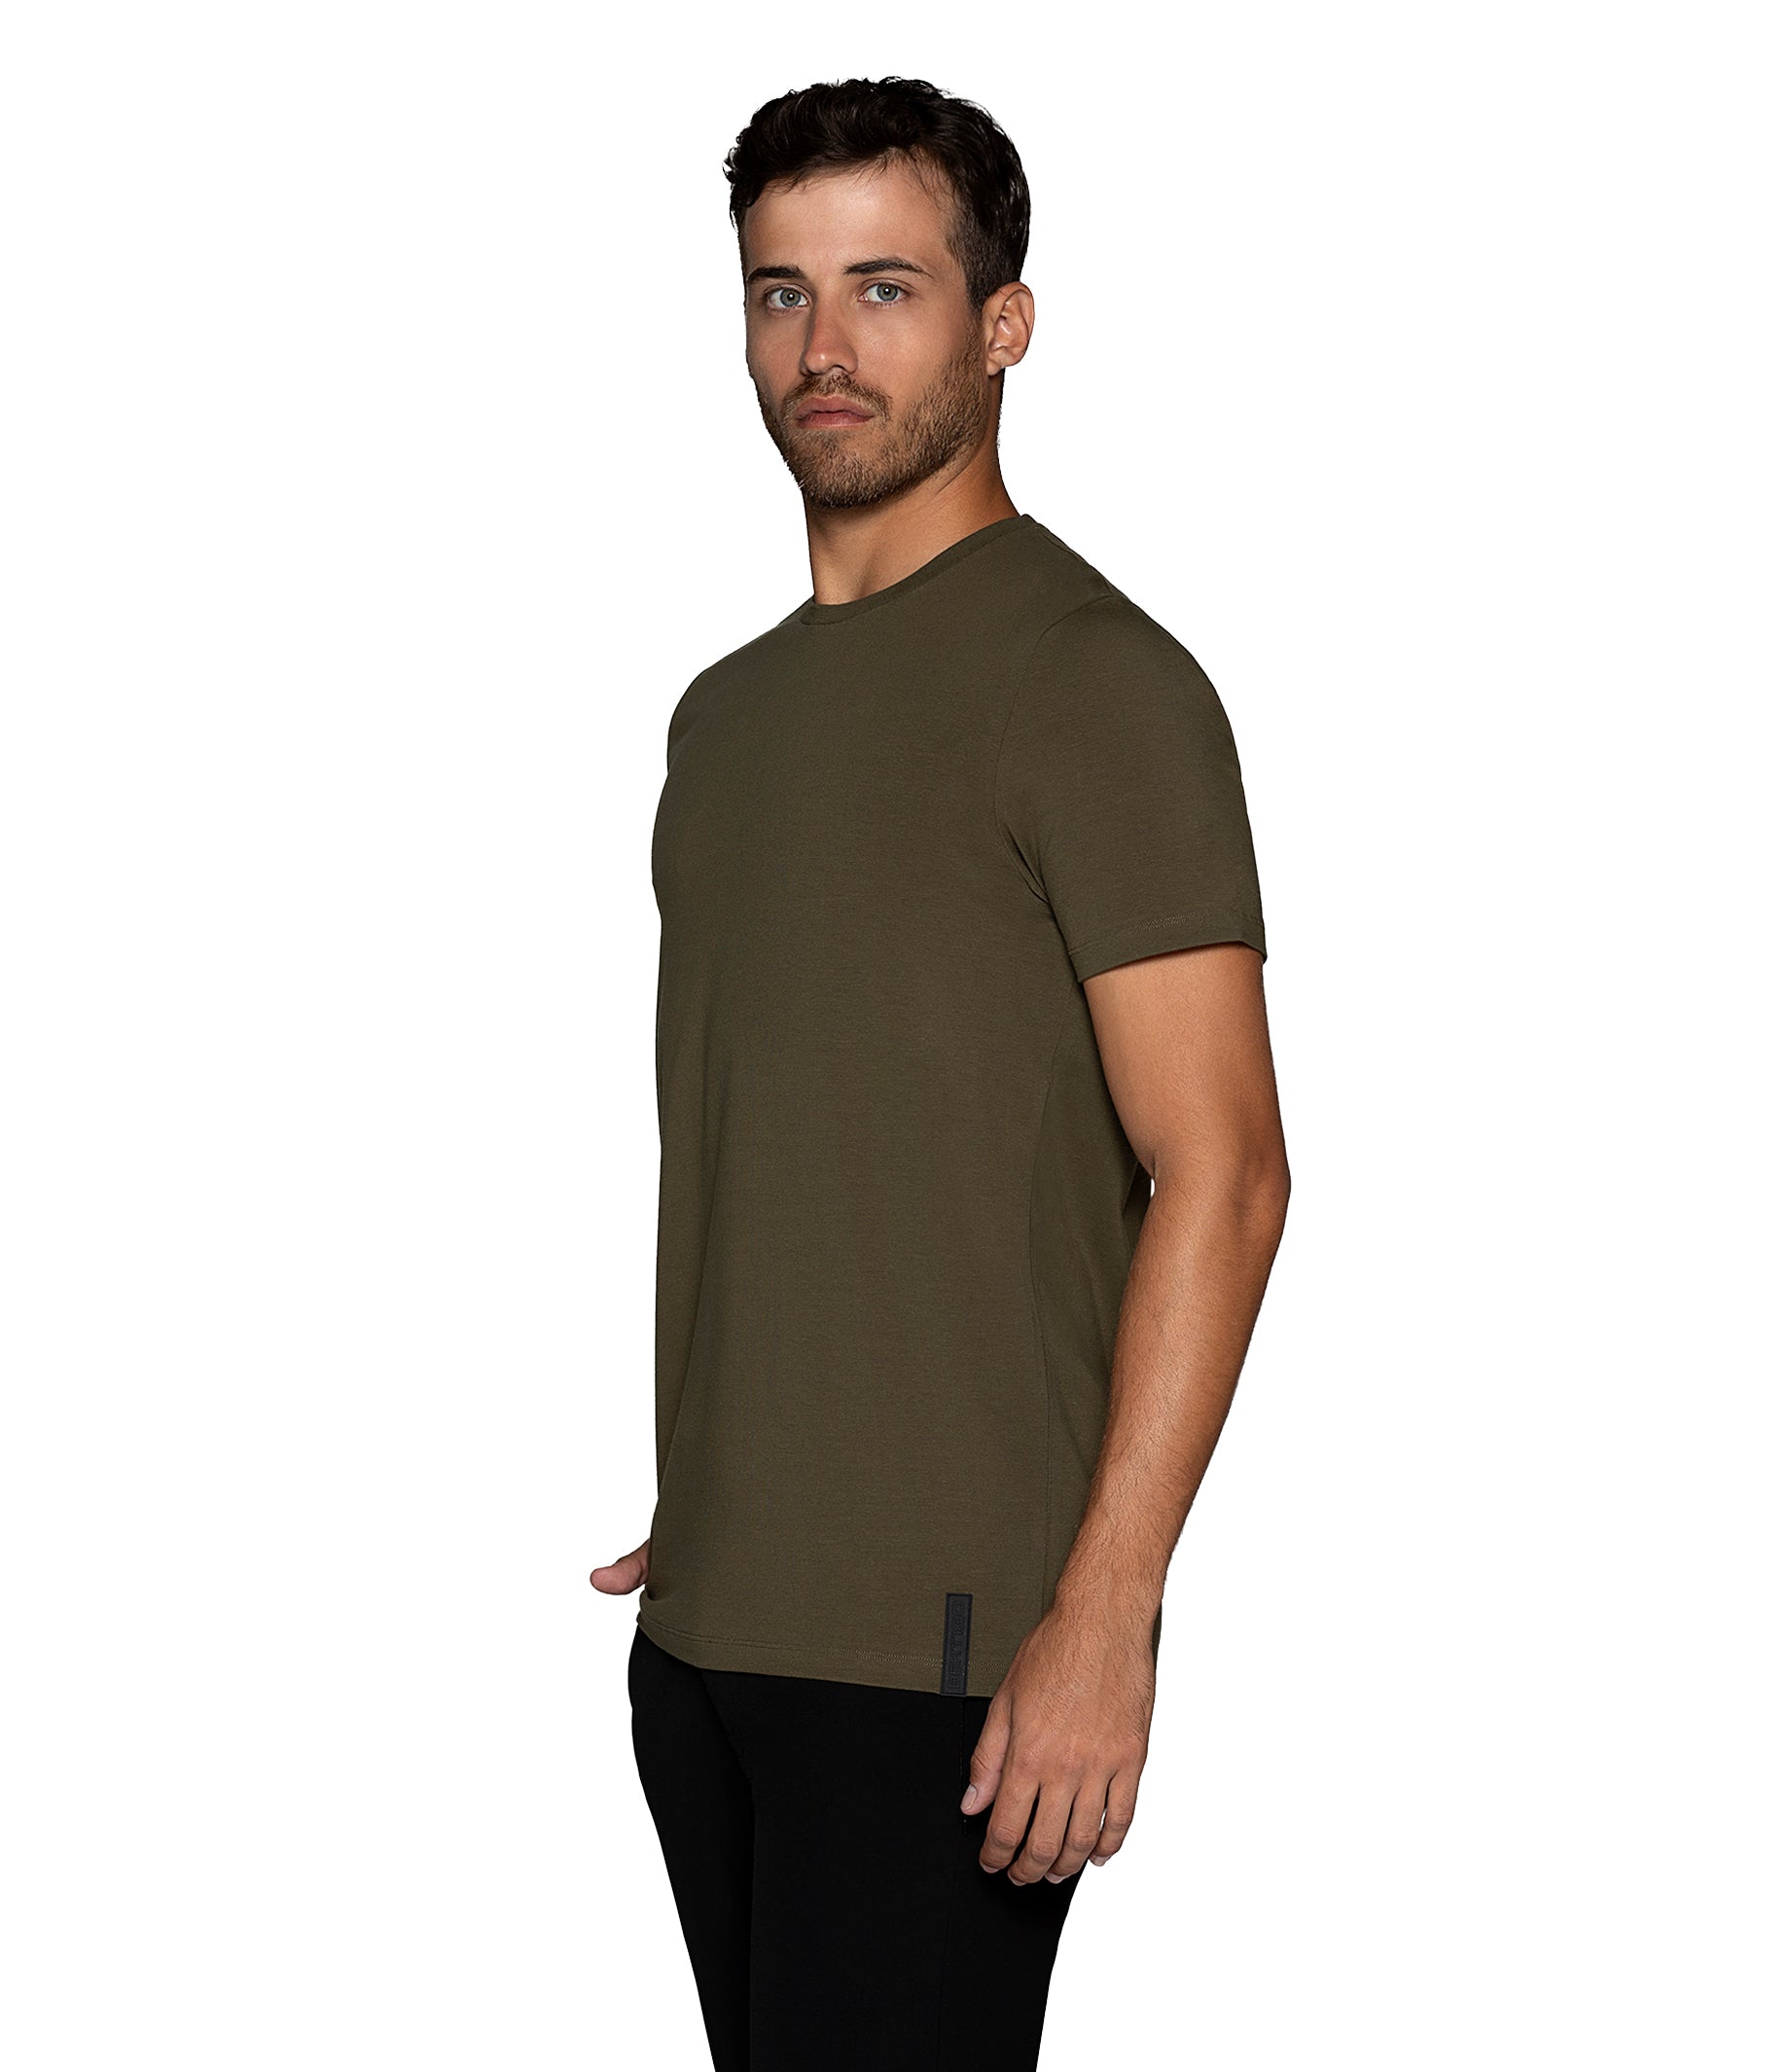 Bertigo Florance Solid Olive T for Shirt Bertigo Shop – Men